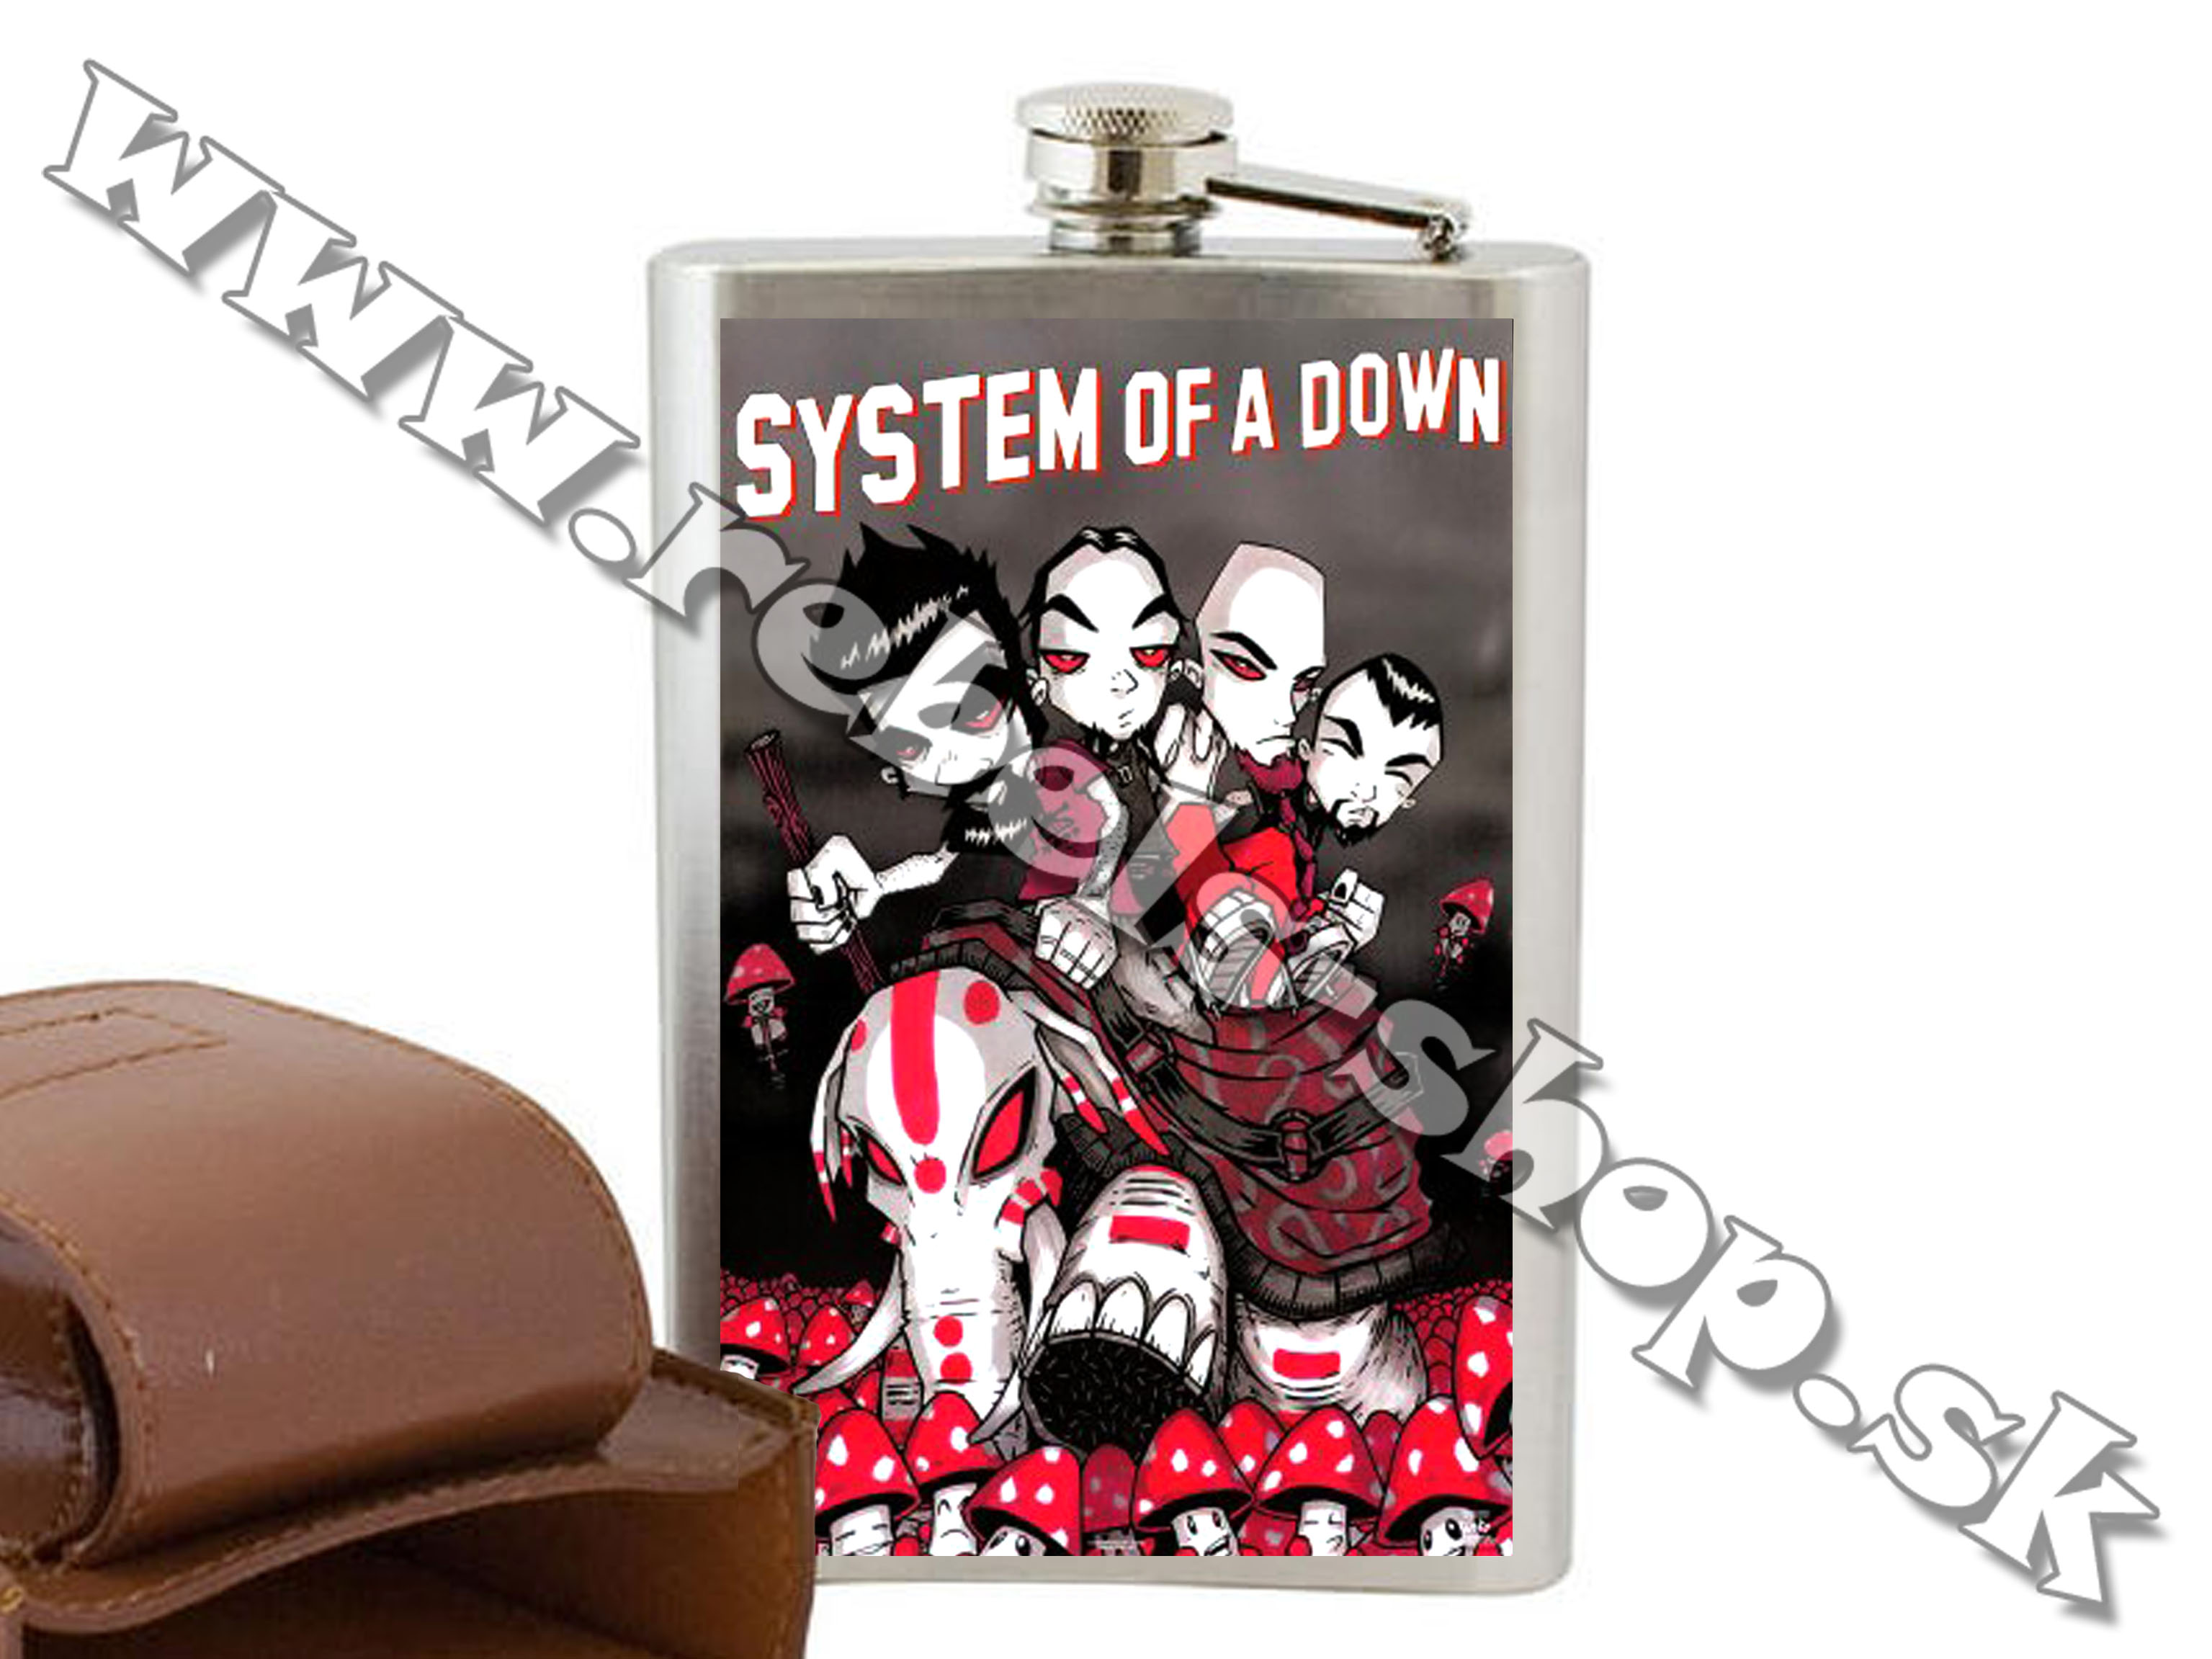 Ploskačka "System of a Down"